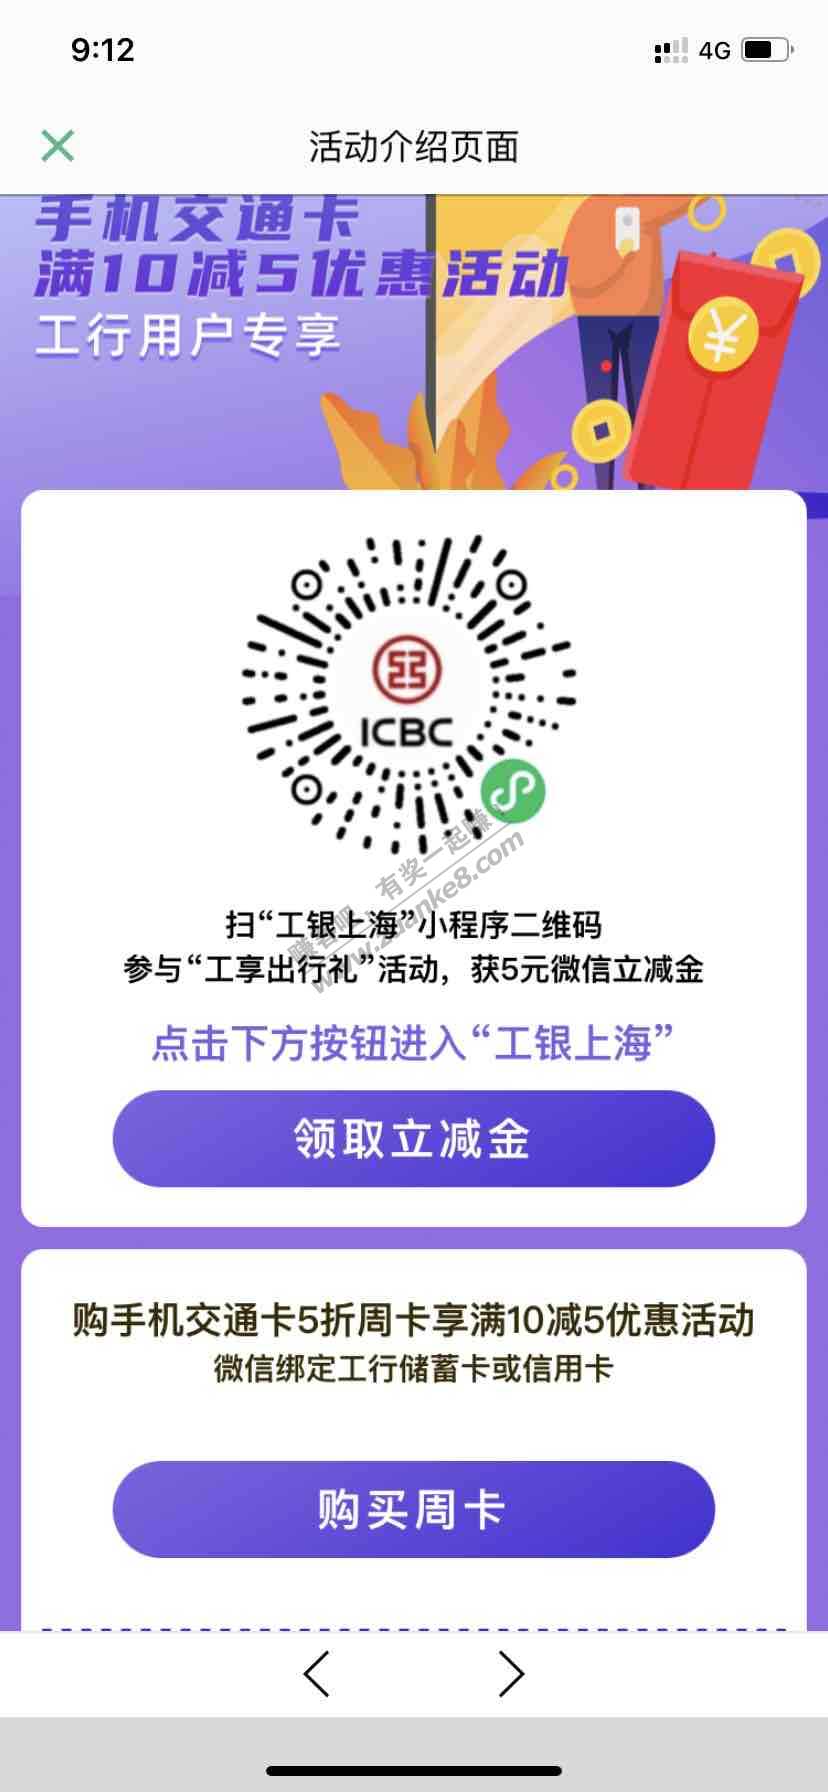 上海公交卡10-5-工行信用卡储蓄卡各一次-惠小助(52huixz.com)